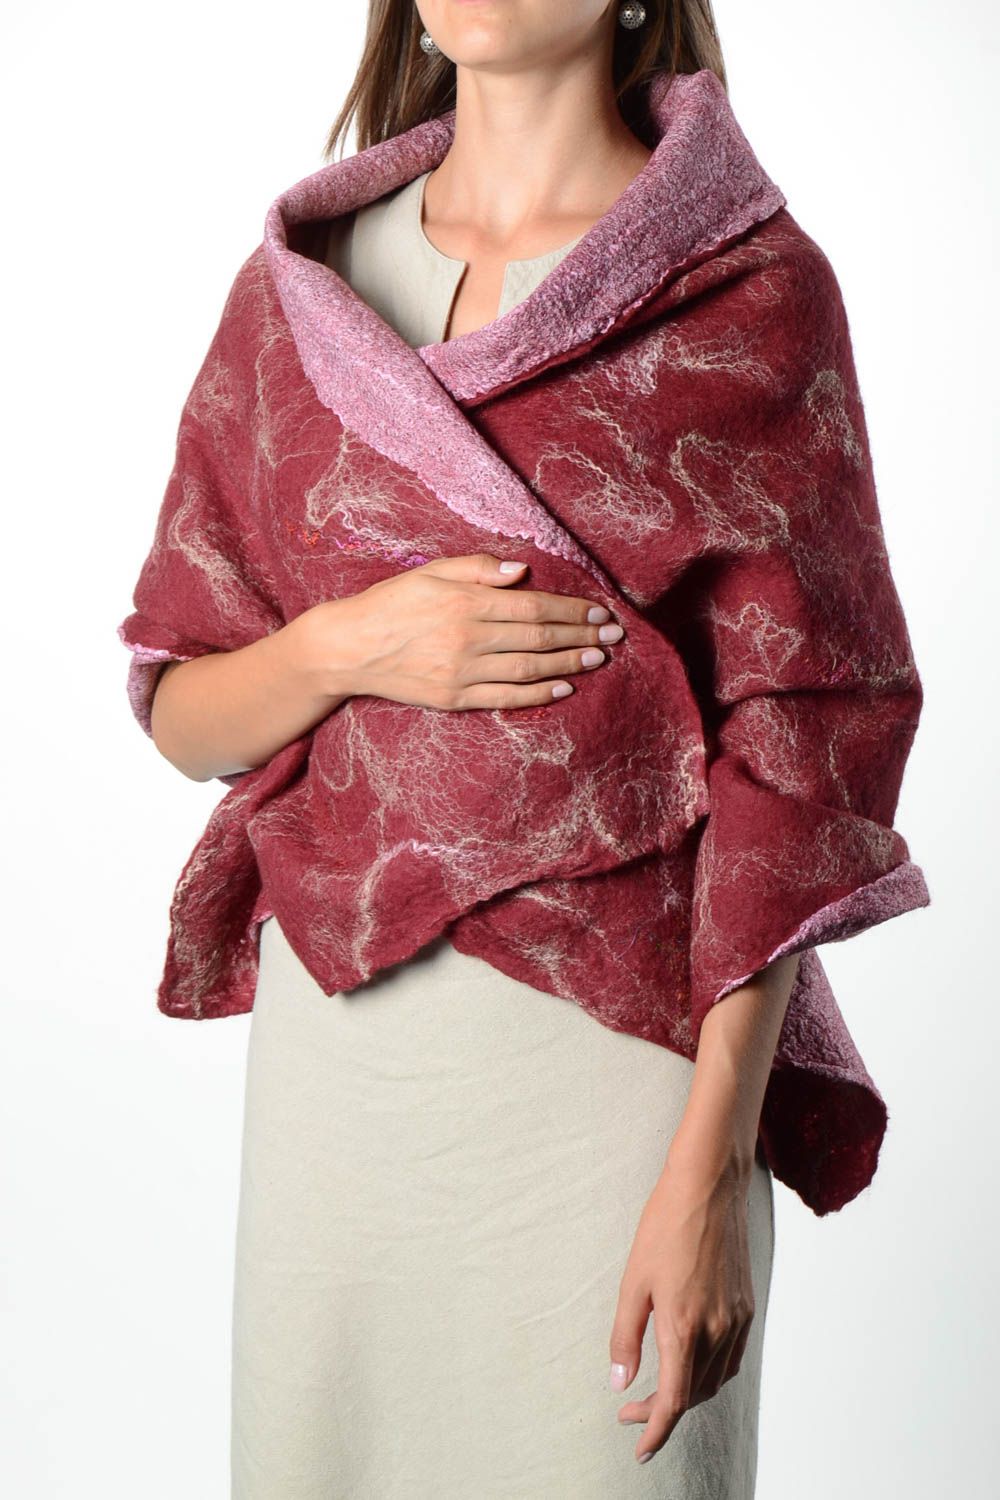 Pañuelo de seda hecho a mano regalo original para mujer chal artesanal foto 1